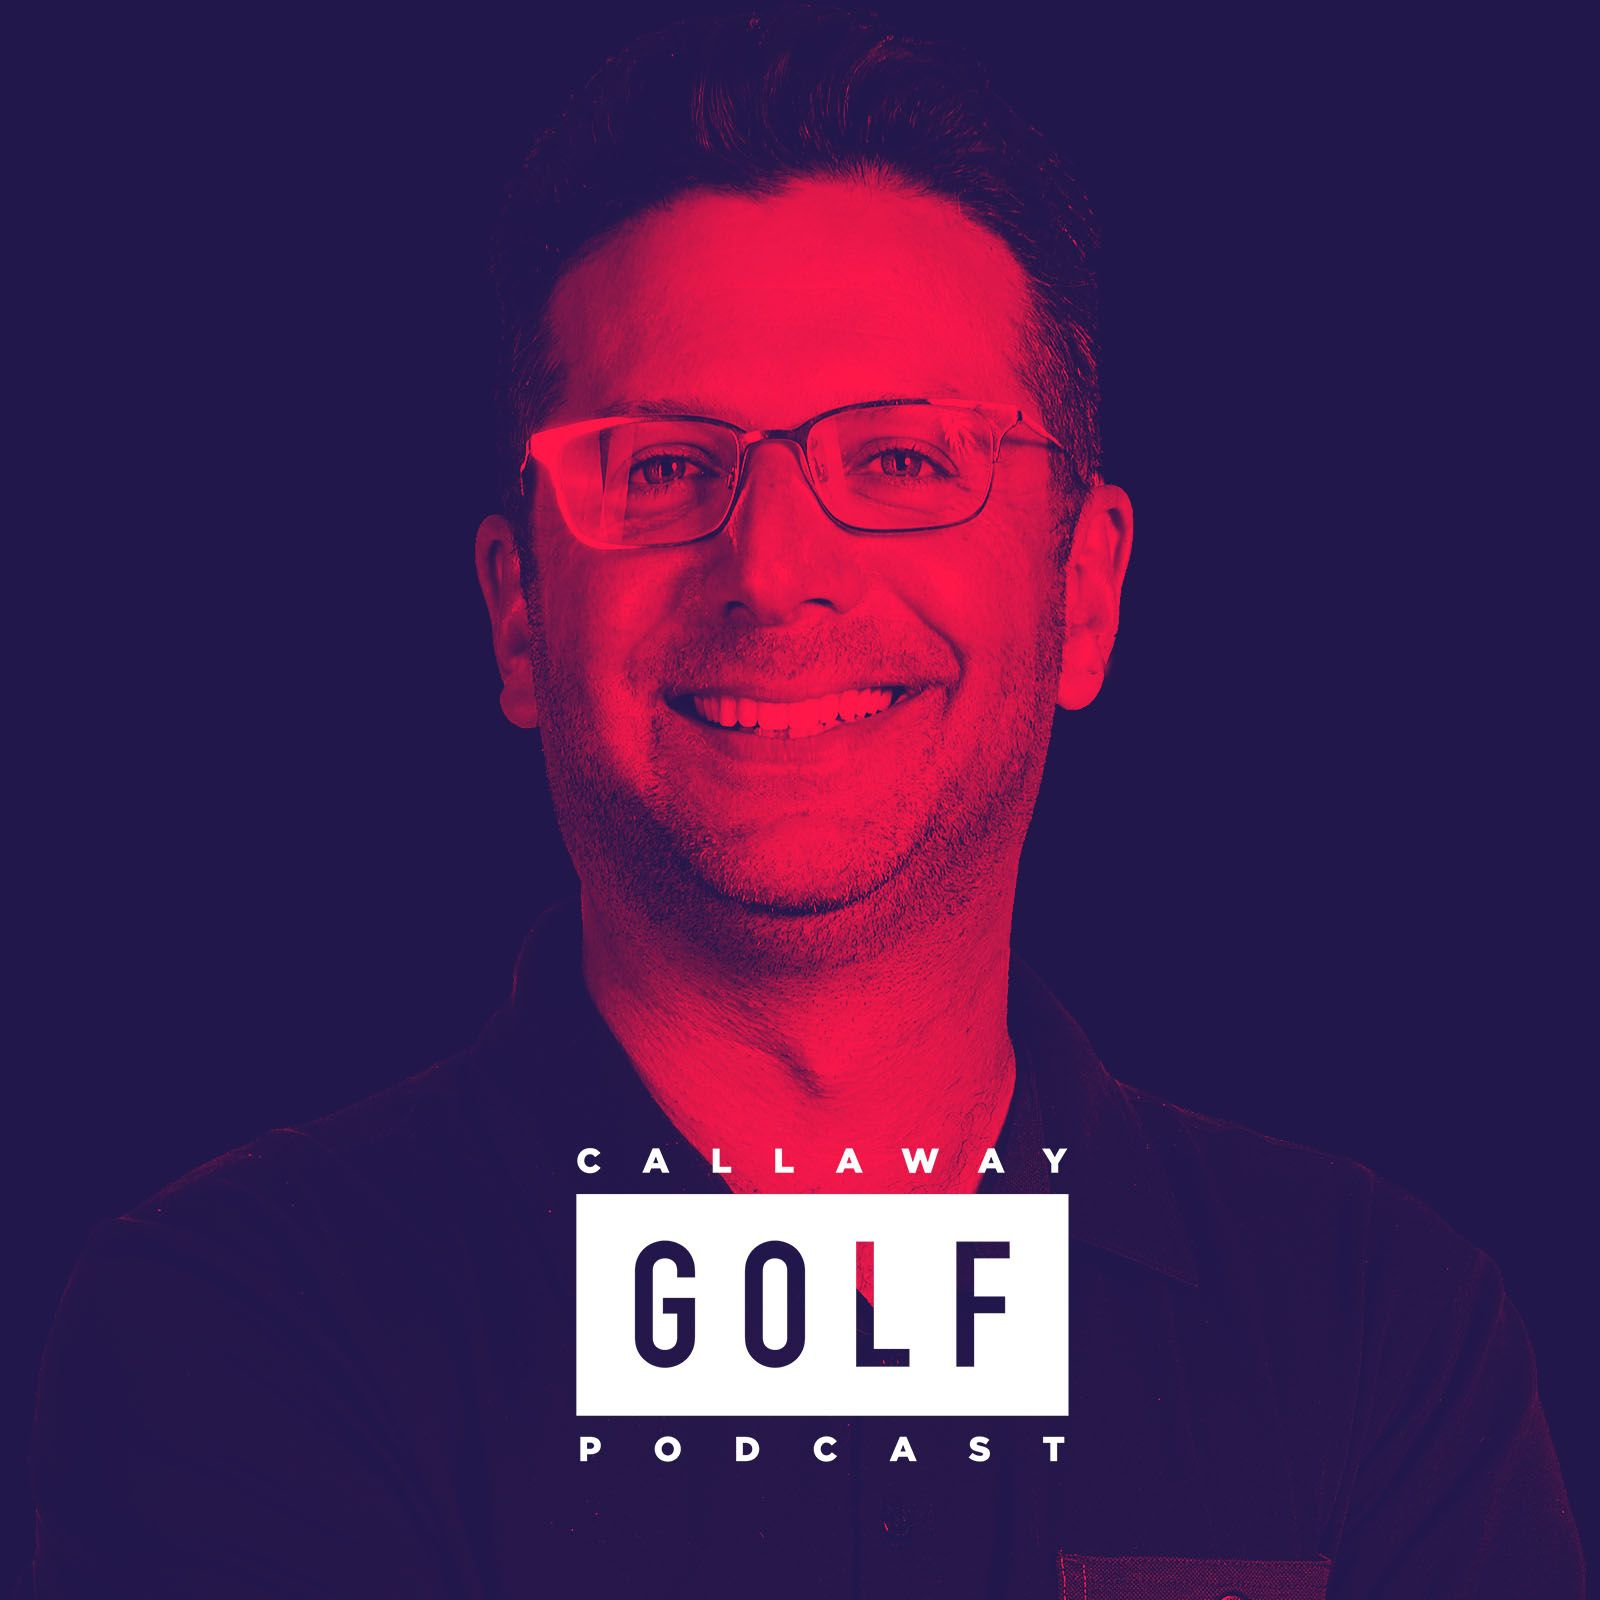 Sebastian Cappelen Serenades Us With His Hidden Talent || Callaway Golf Podcast 379